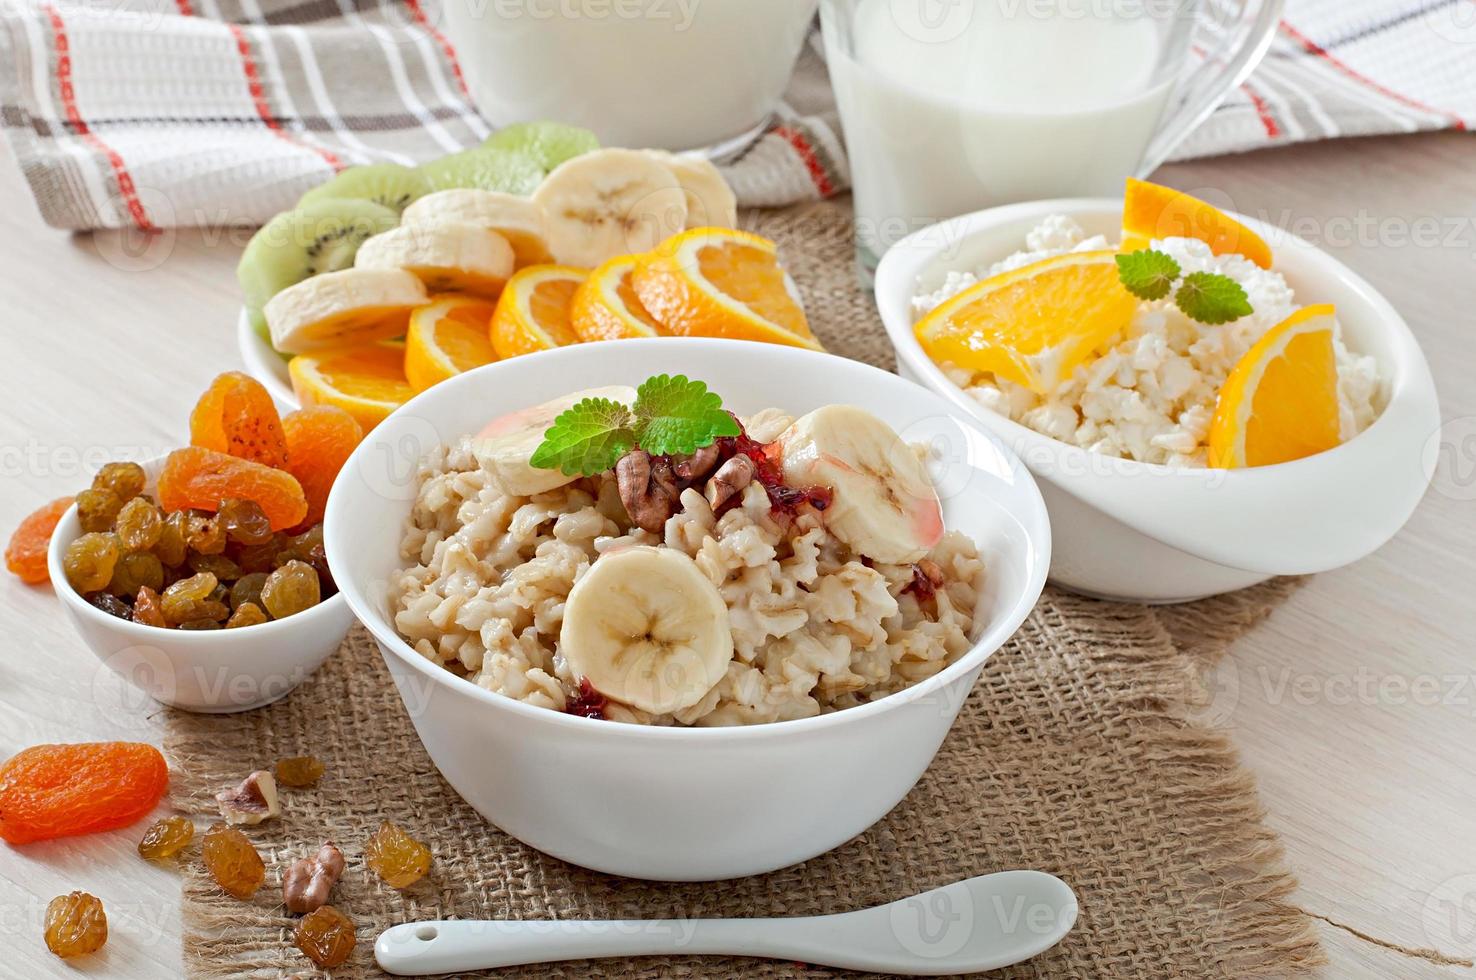 hälsosam frukost - havregryn, keso, mjölk och frukt foto